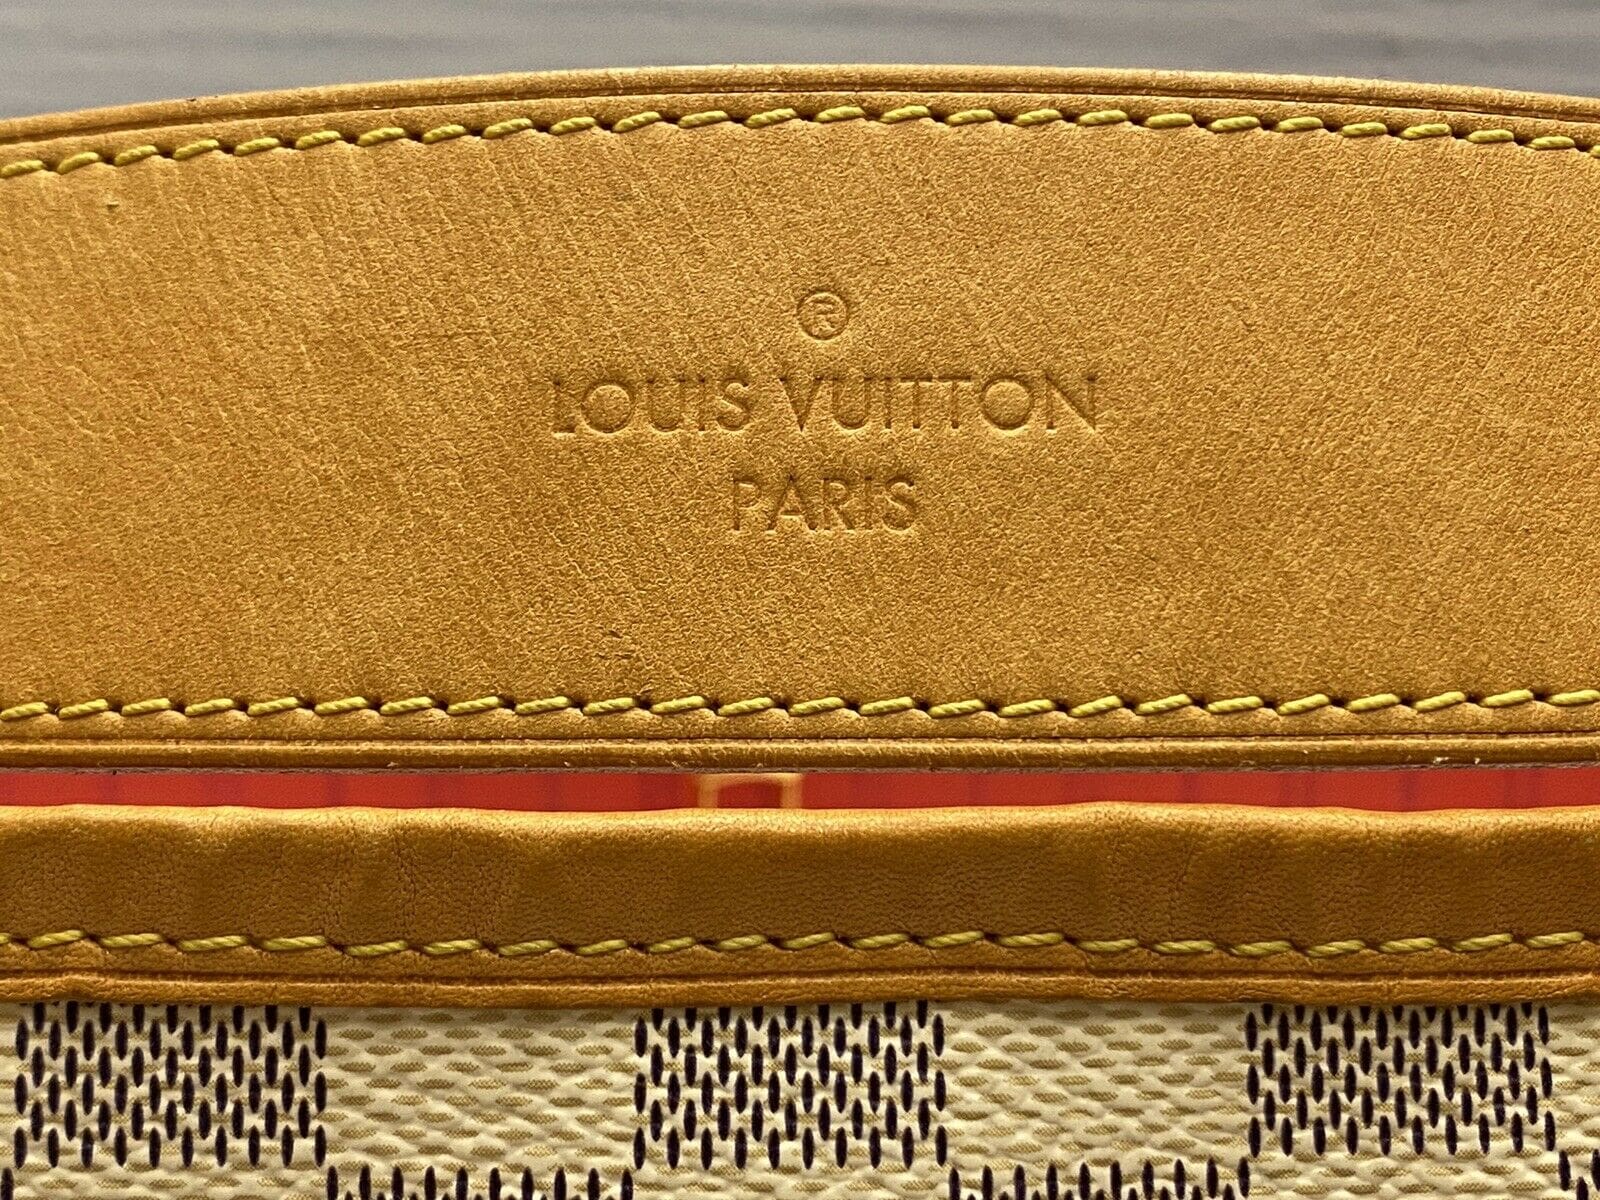 Louis Vuitton Delightful Damier azur, Hot Pink Interior